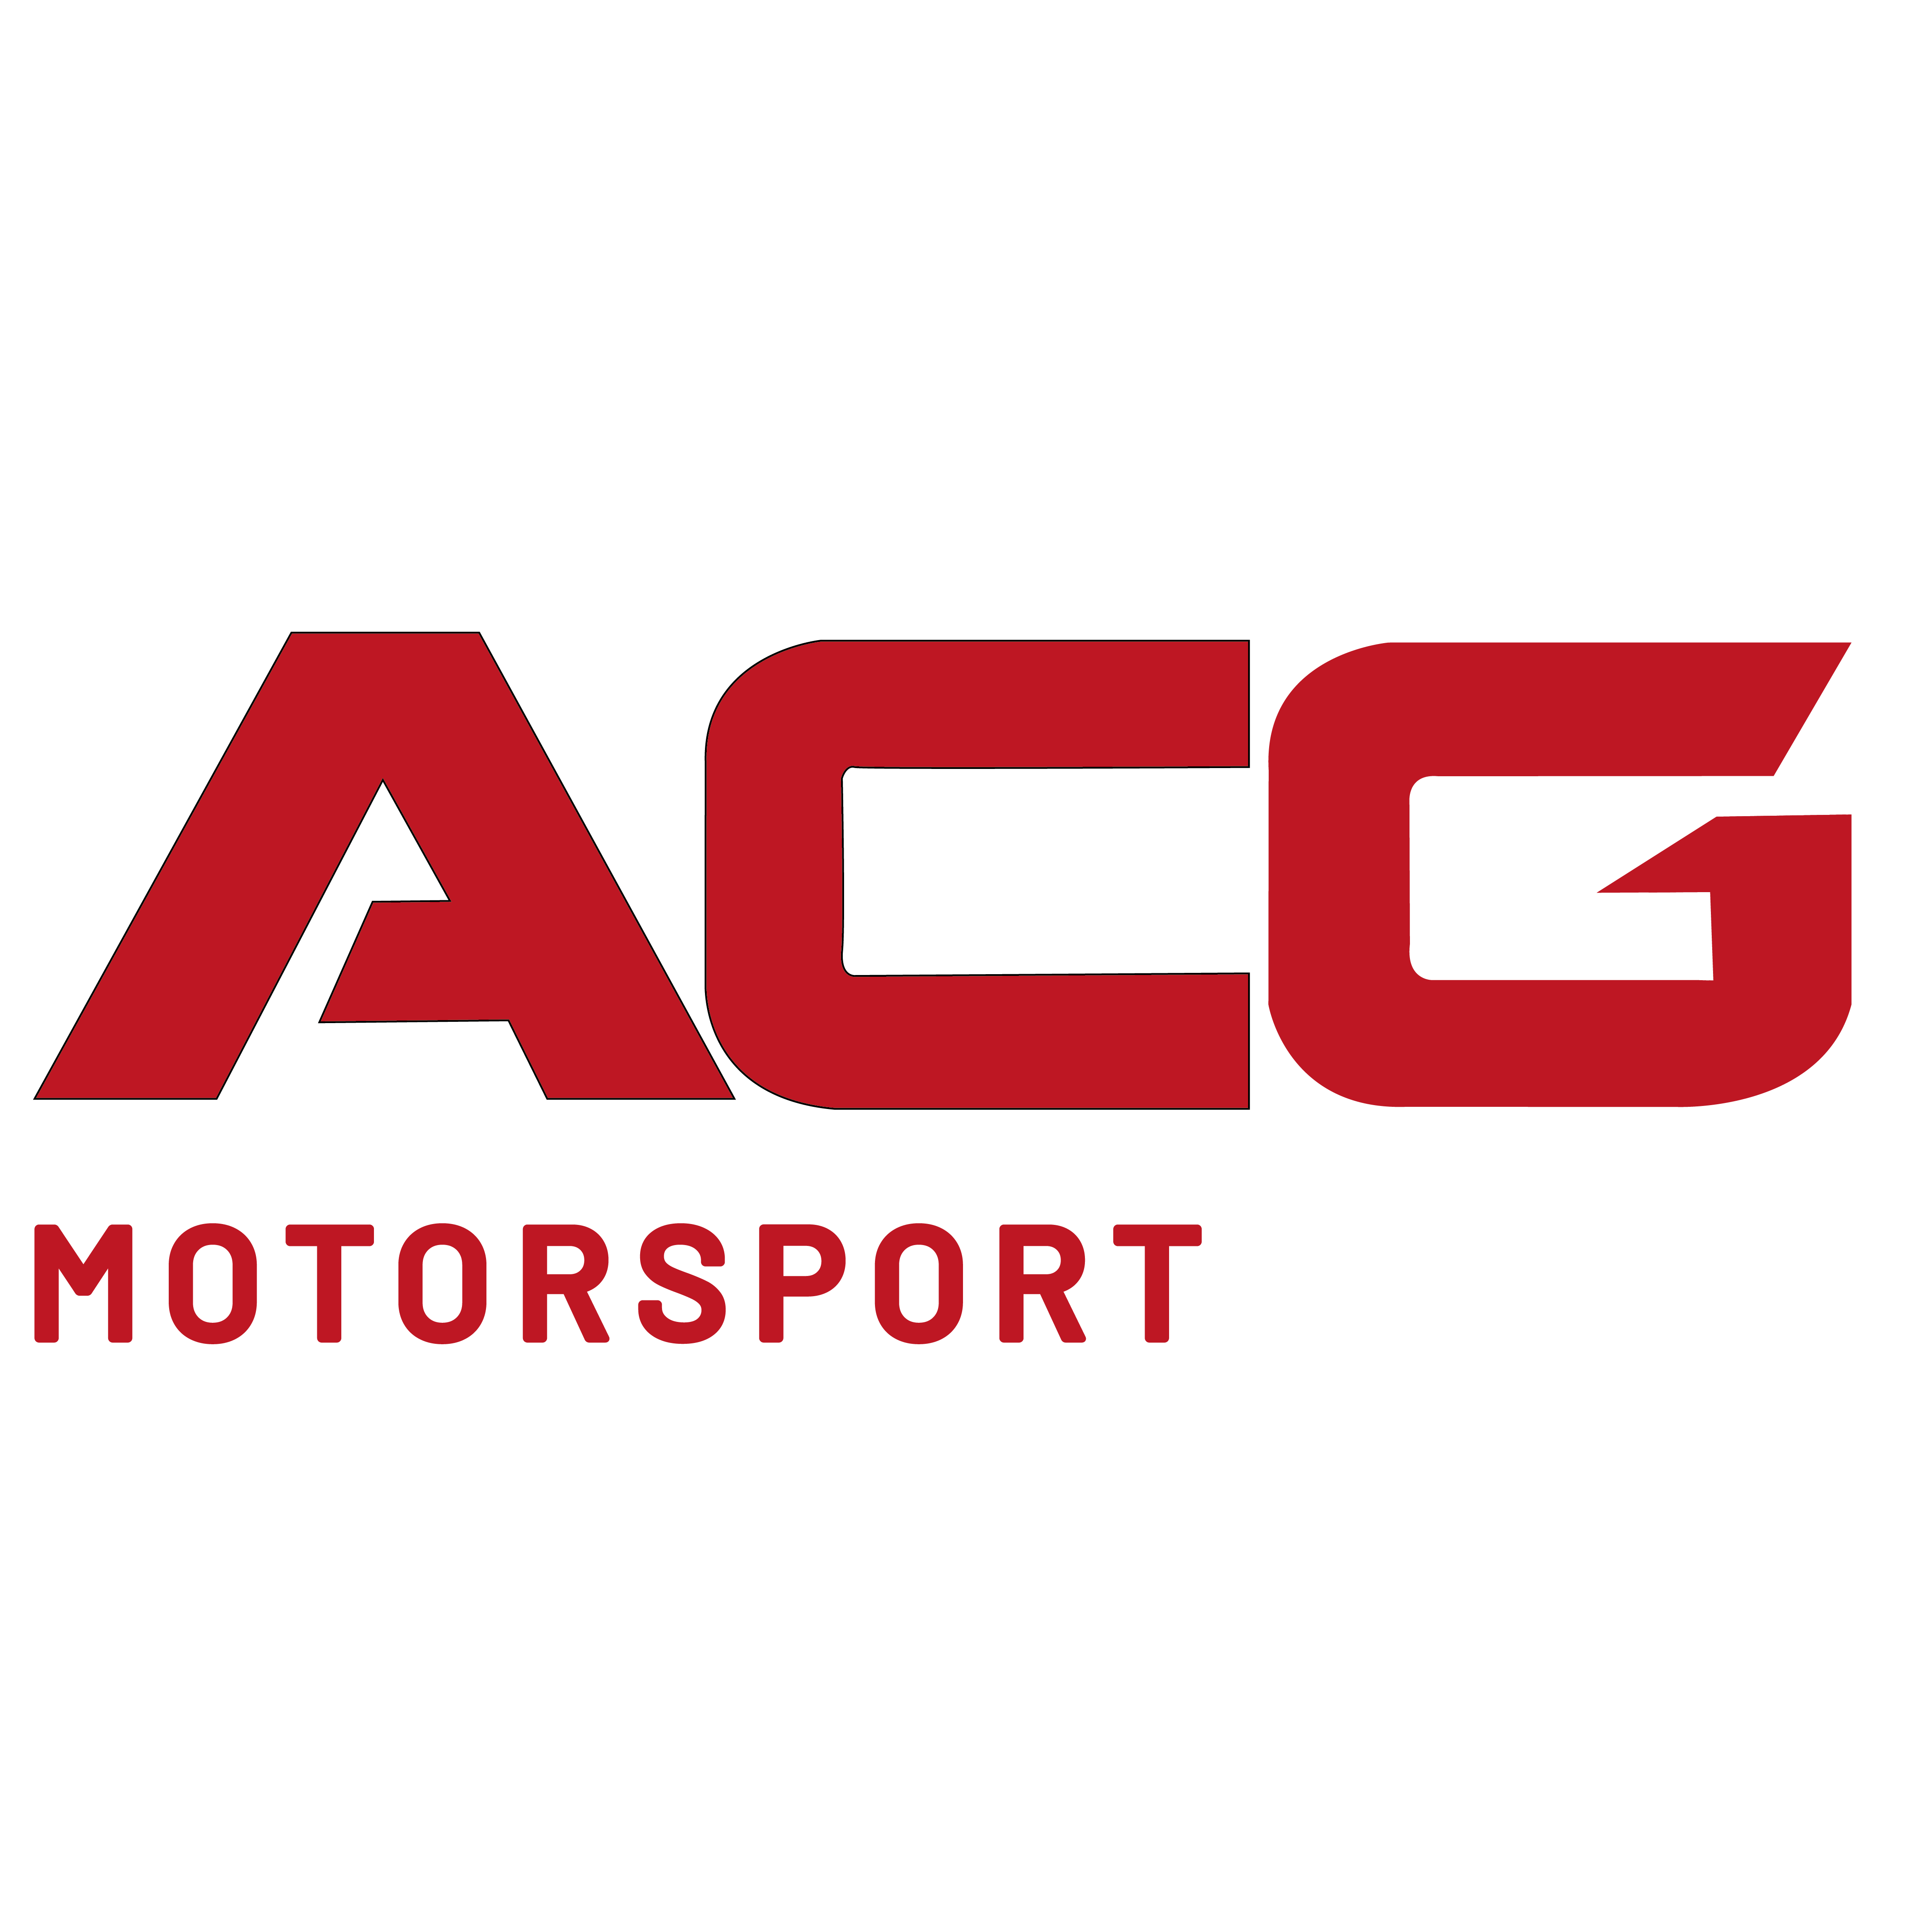 ACG MotorSport